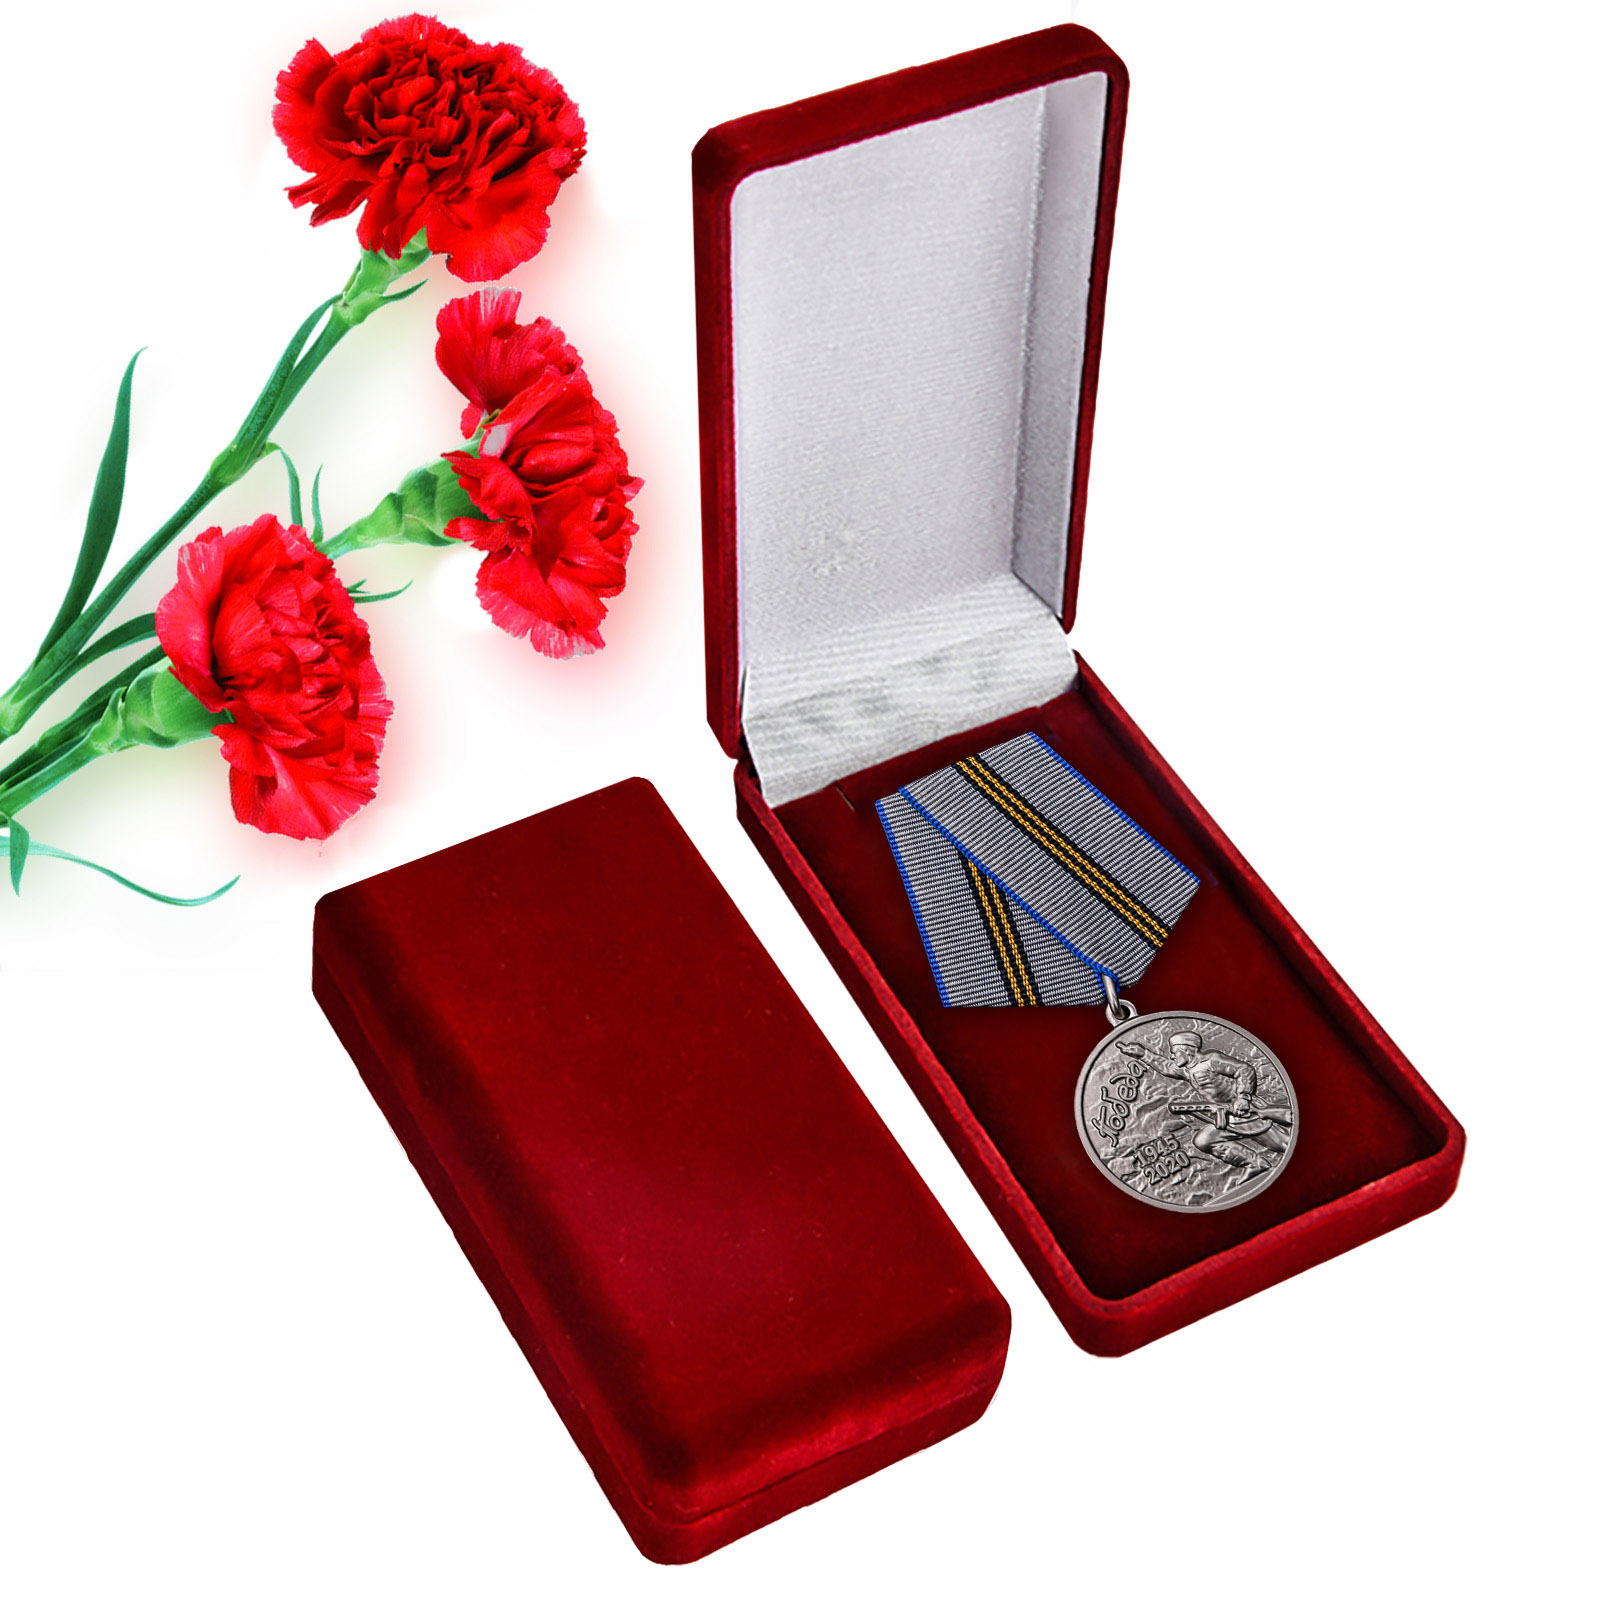 Купить наградную медаль 75 лет Победы в ВОВ 1941-1945 гг. выгодно с доставкой